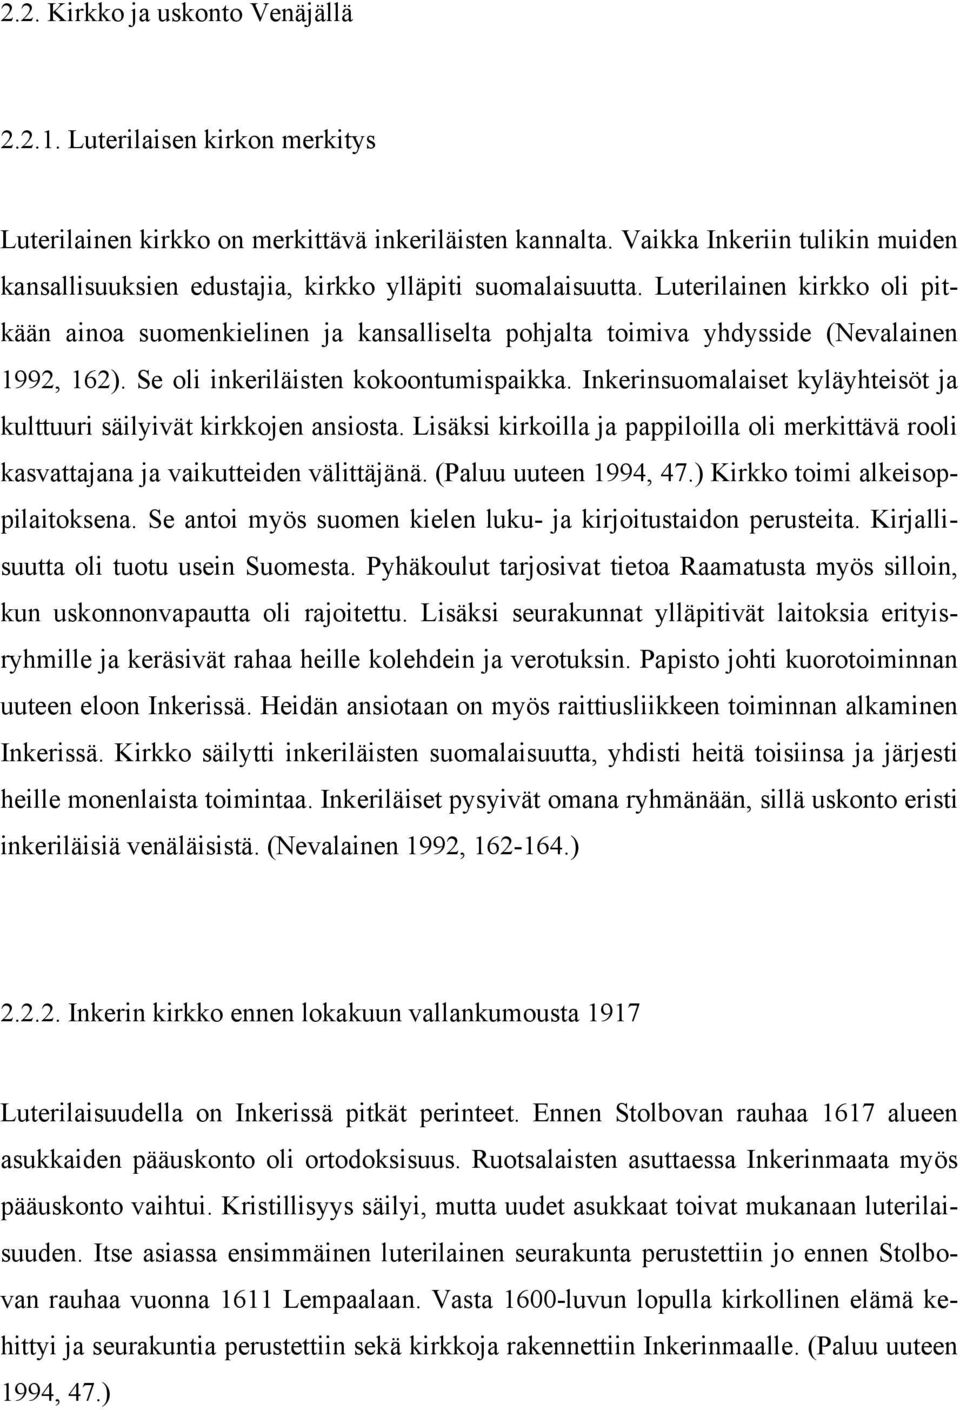 Luterilainen kirkko oli pitkään ainoa suomenkielinen ja kansalliselta pohjalta toimiva yhdysside (Nevalainen 1992, 162). Se oli inkeriläisten kokoontumispaikka.